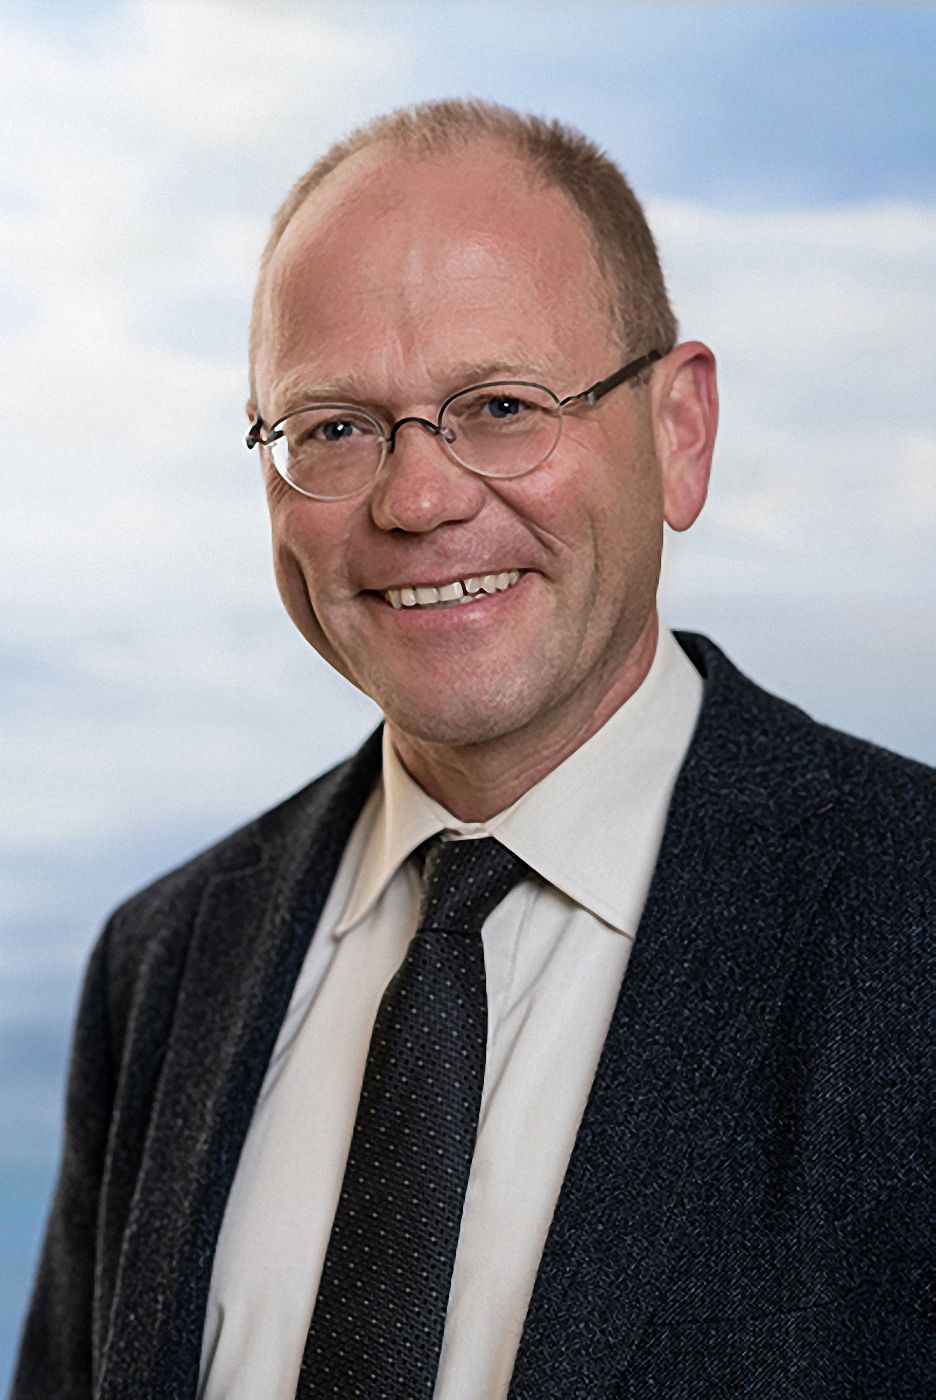 Stellvertretender Geschäftsführer Jörg Hackstein Nordseeklinik Westfalen COPD & Asthma Schwerpunktklinik